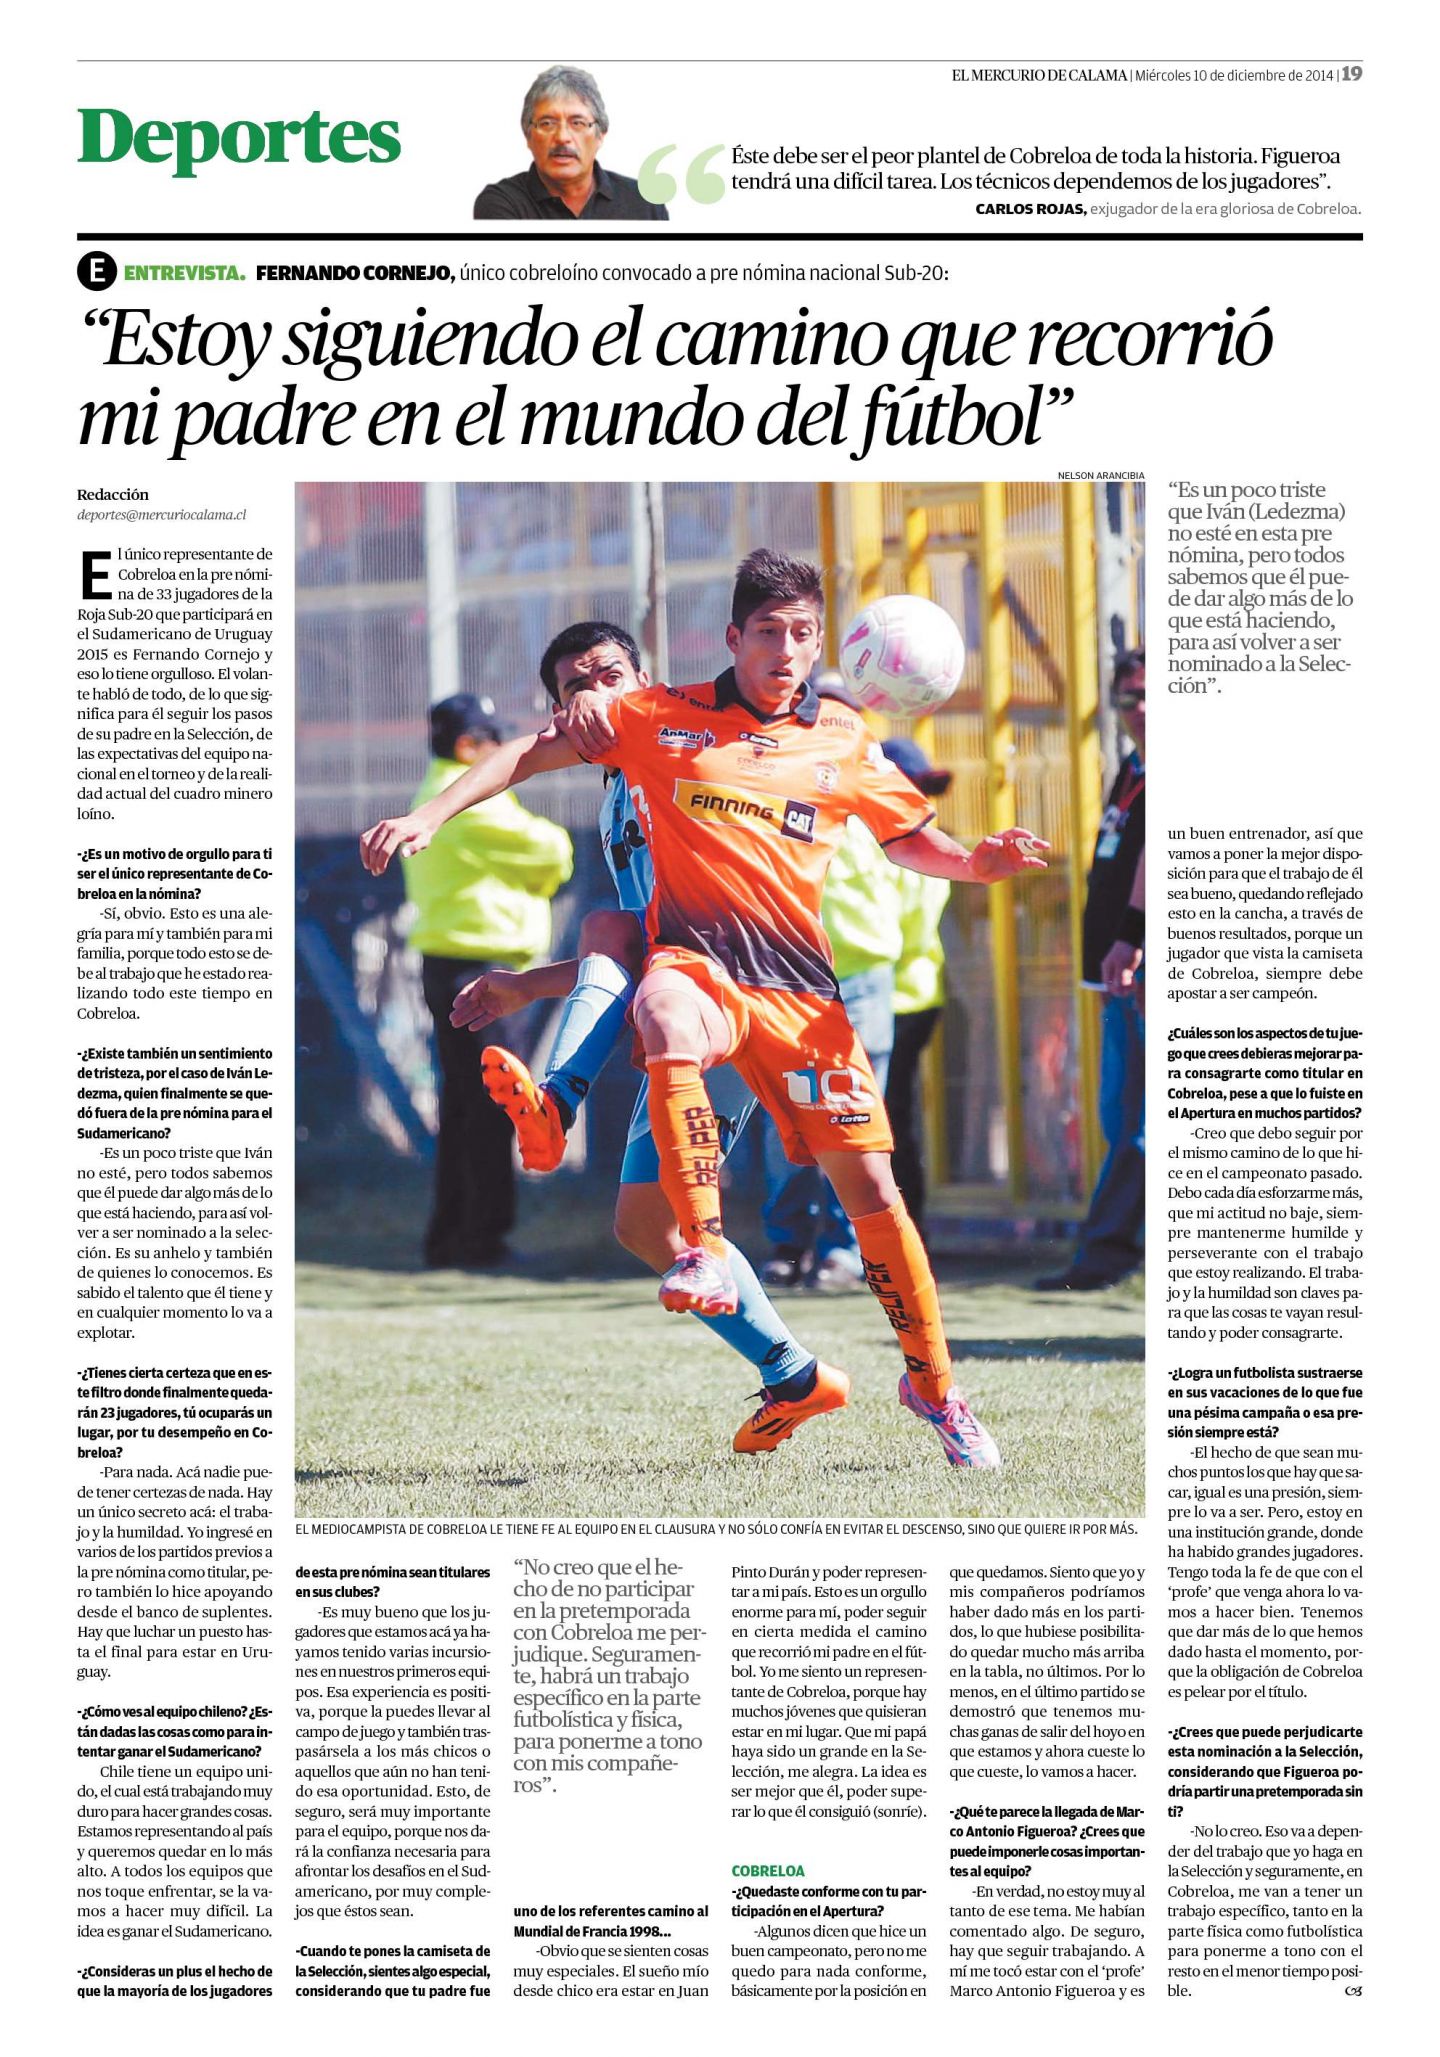 Fernando Cornejo M.: "Estoy siguiendo el camino que recorrió mi padre en el mundo del fútbol" 10_12_14_pag_19-1440